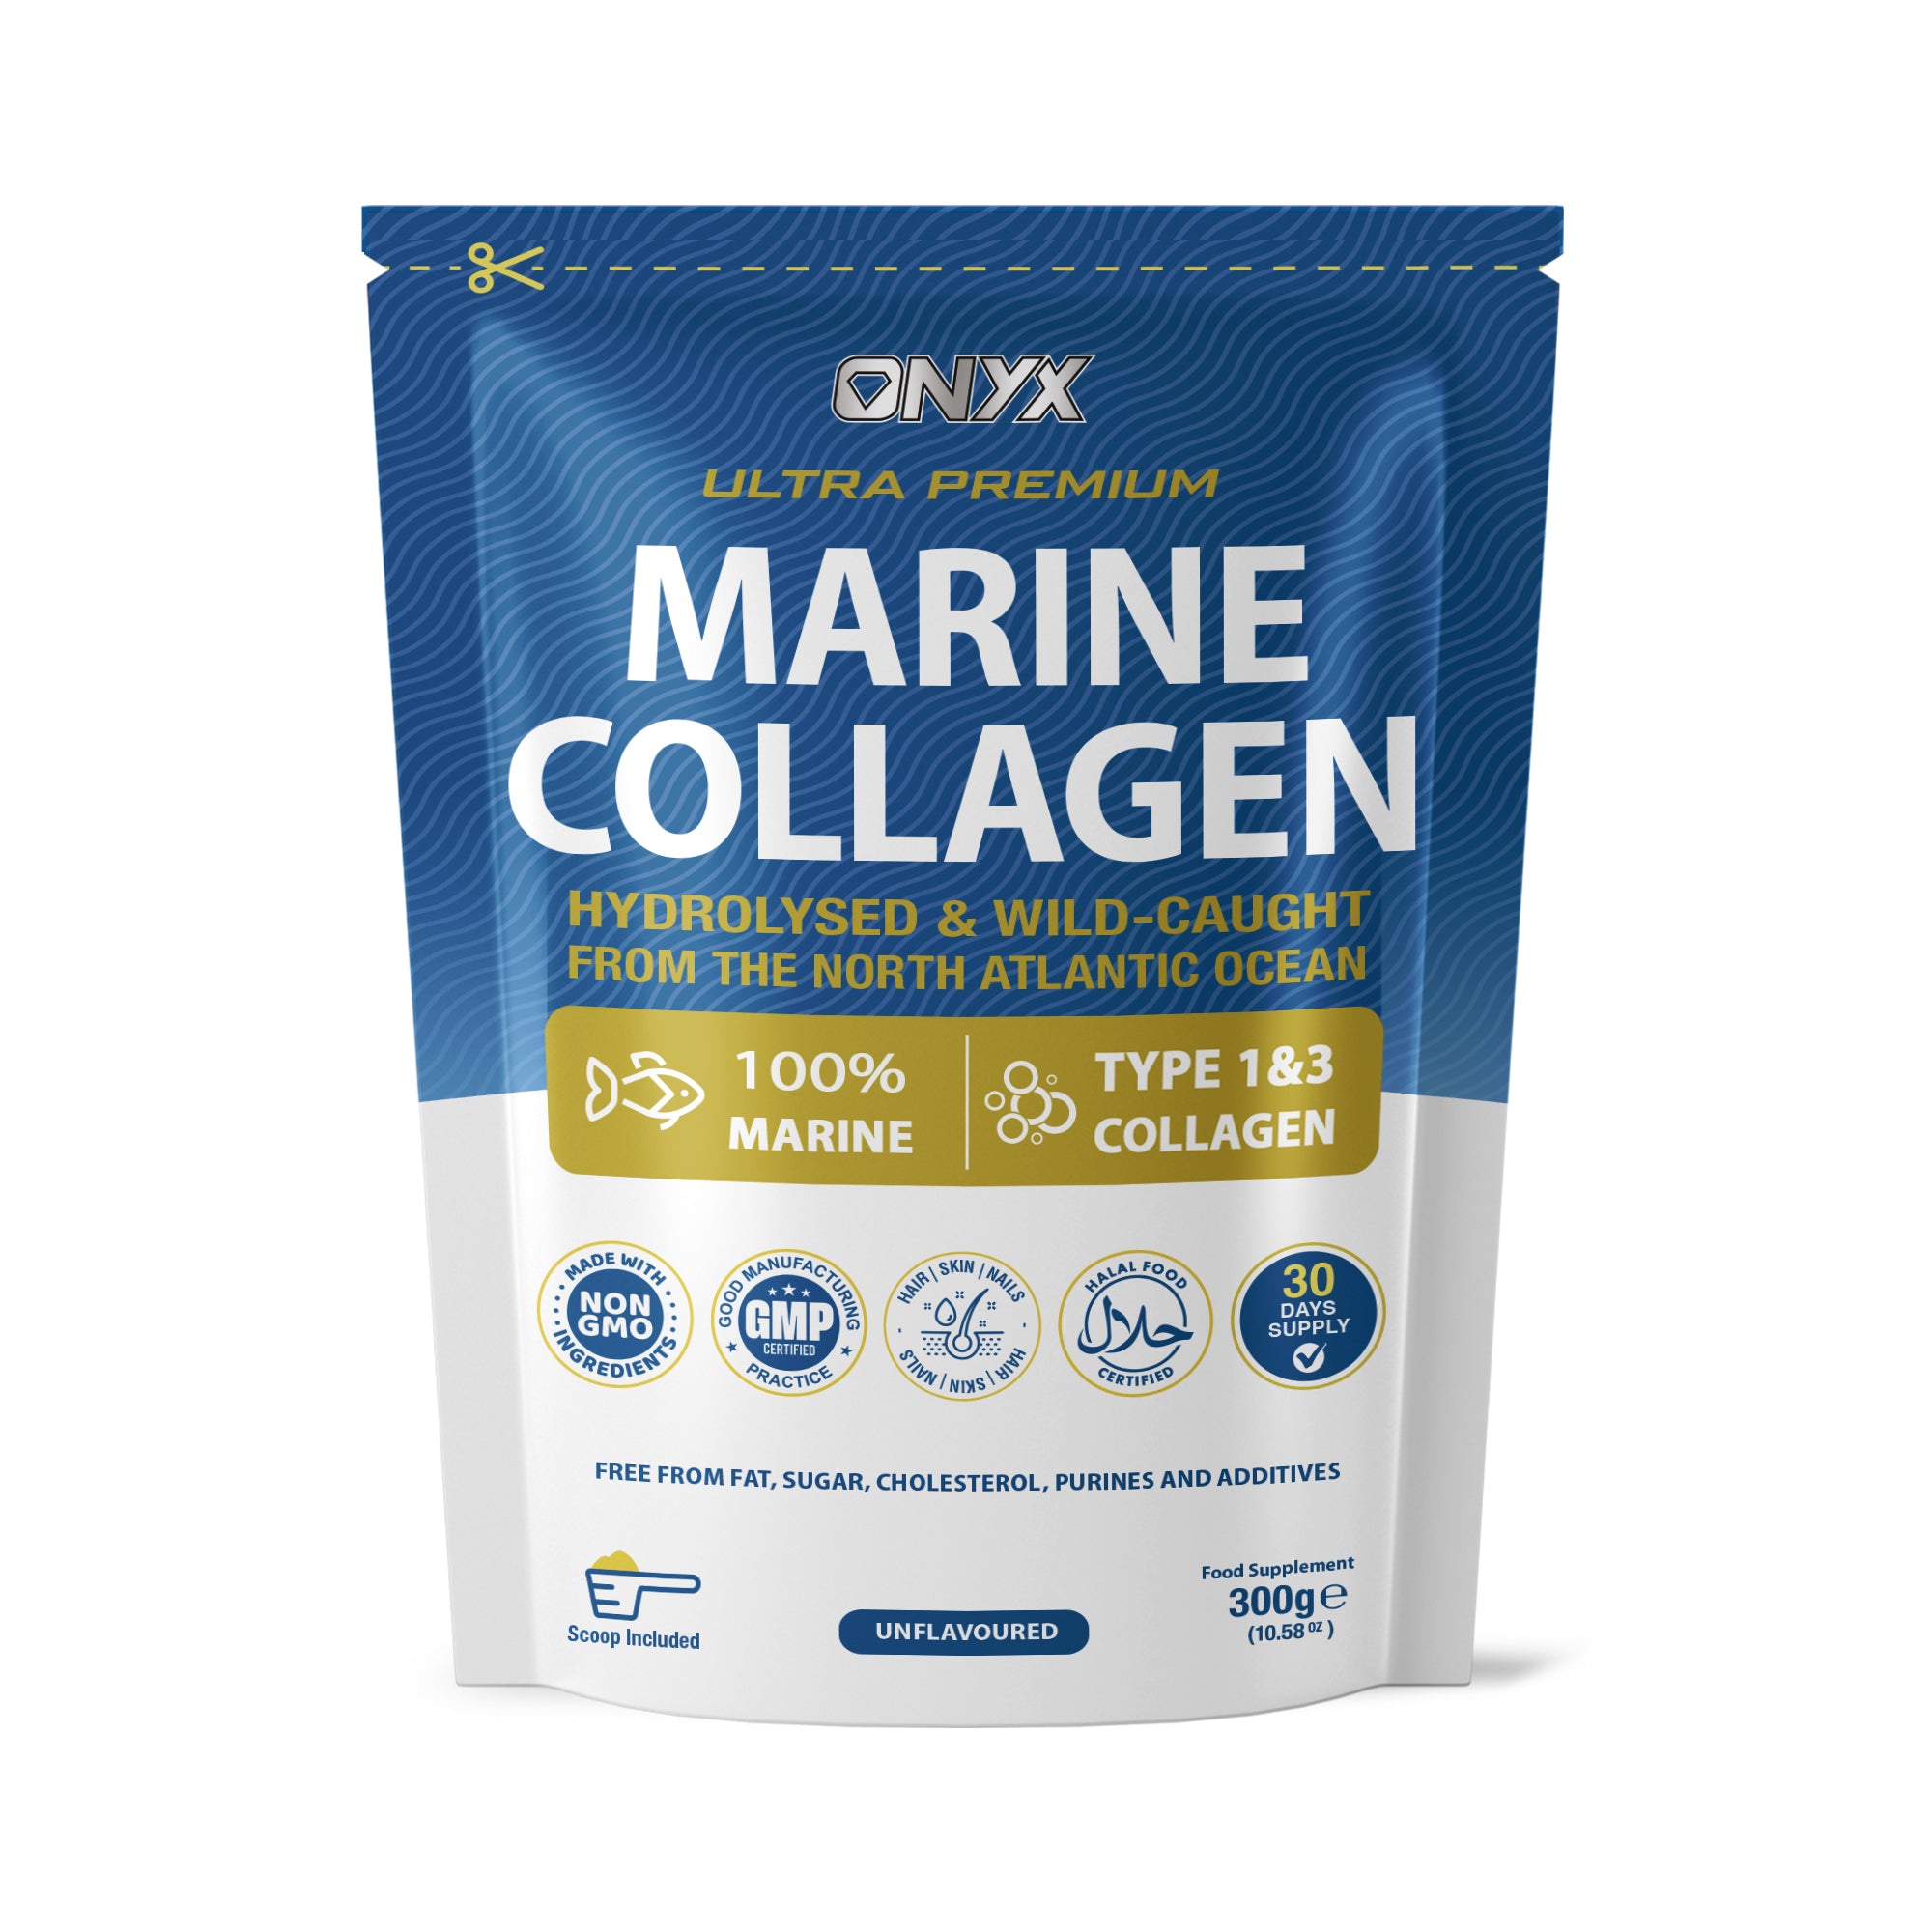 Premium Marine Collagen Powder 10000mg - Hydrolysed & Wild-Caught - Collagen Supplements For Women & Men